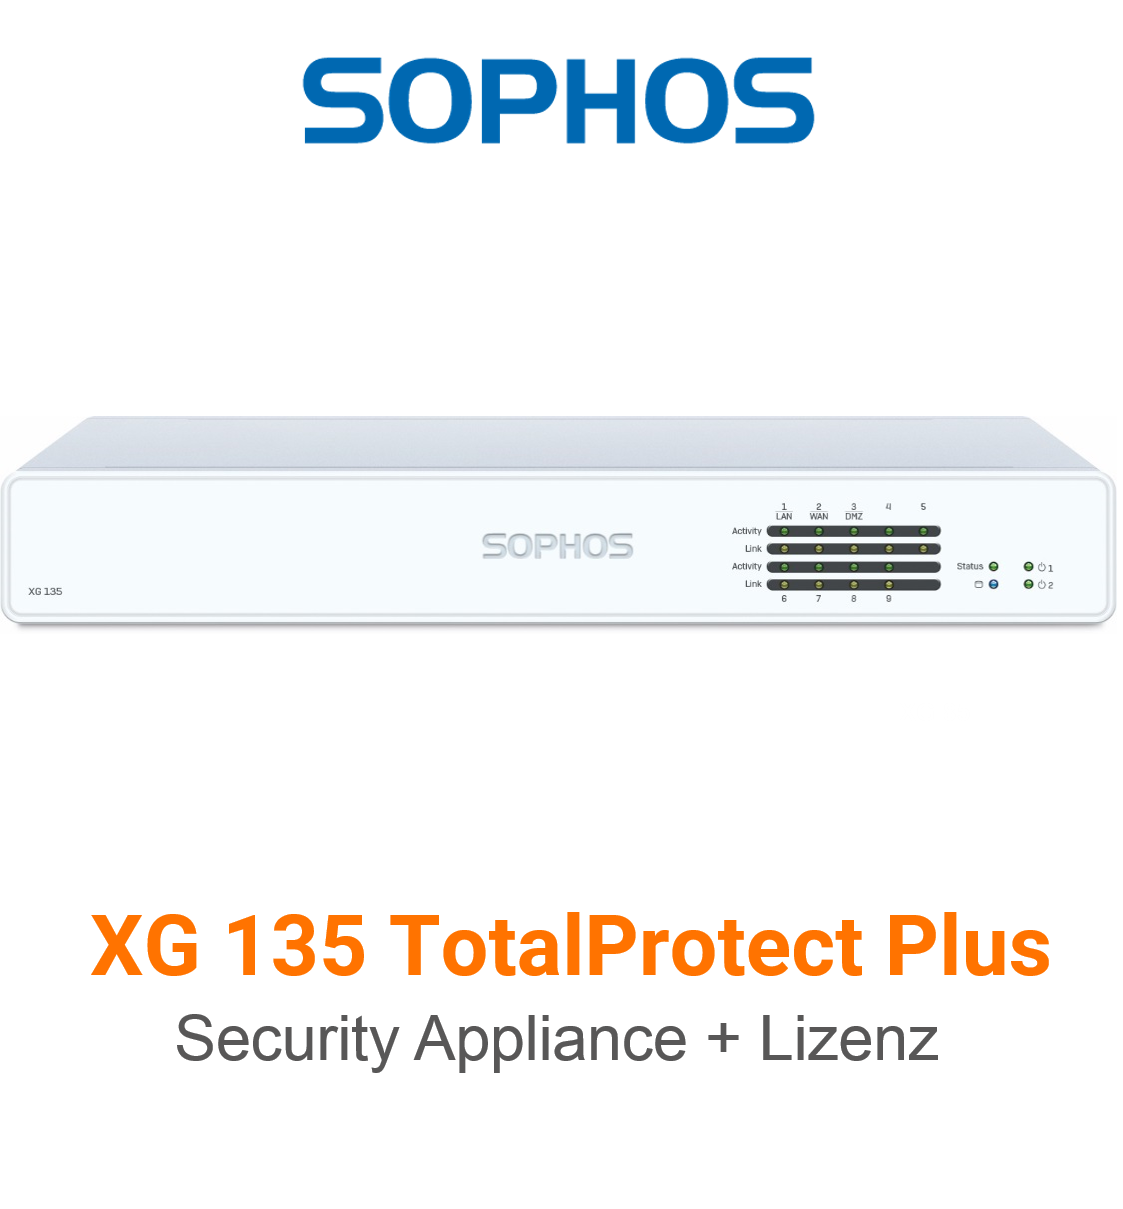 Sophos XG 135 TotalProtect Plus Bundle (Hardware + Lizenz)